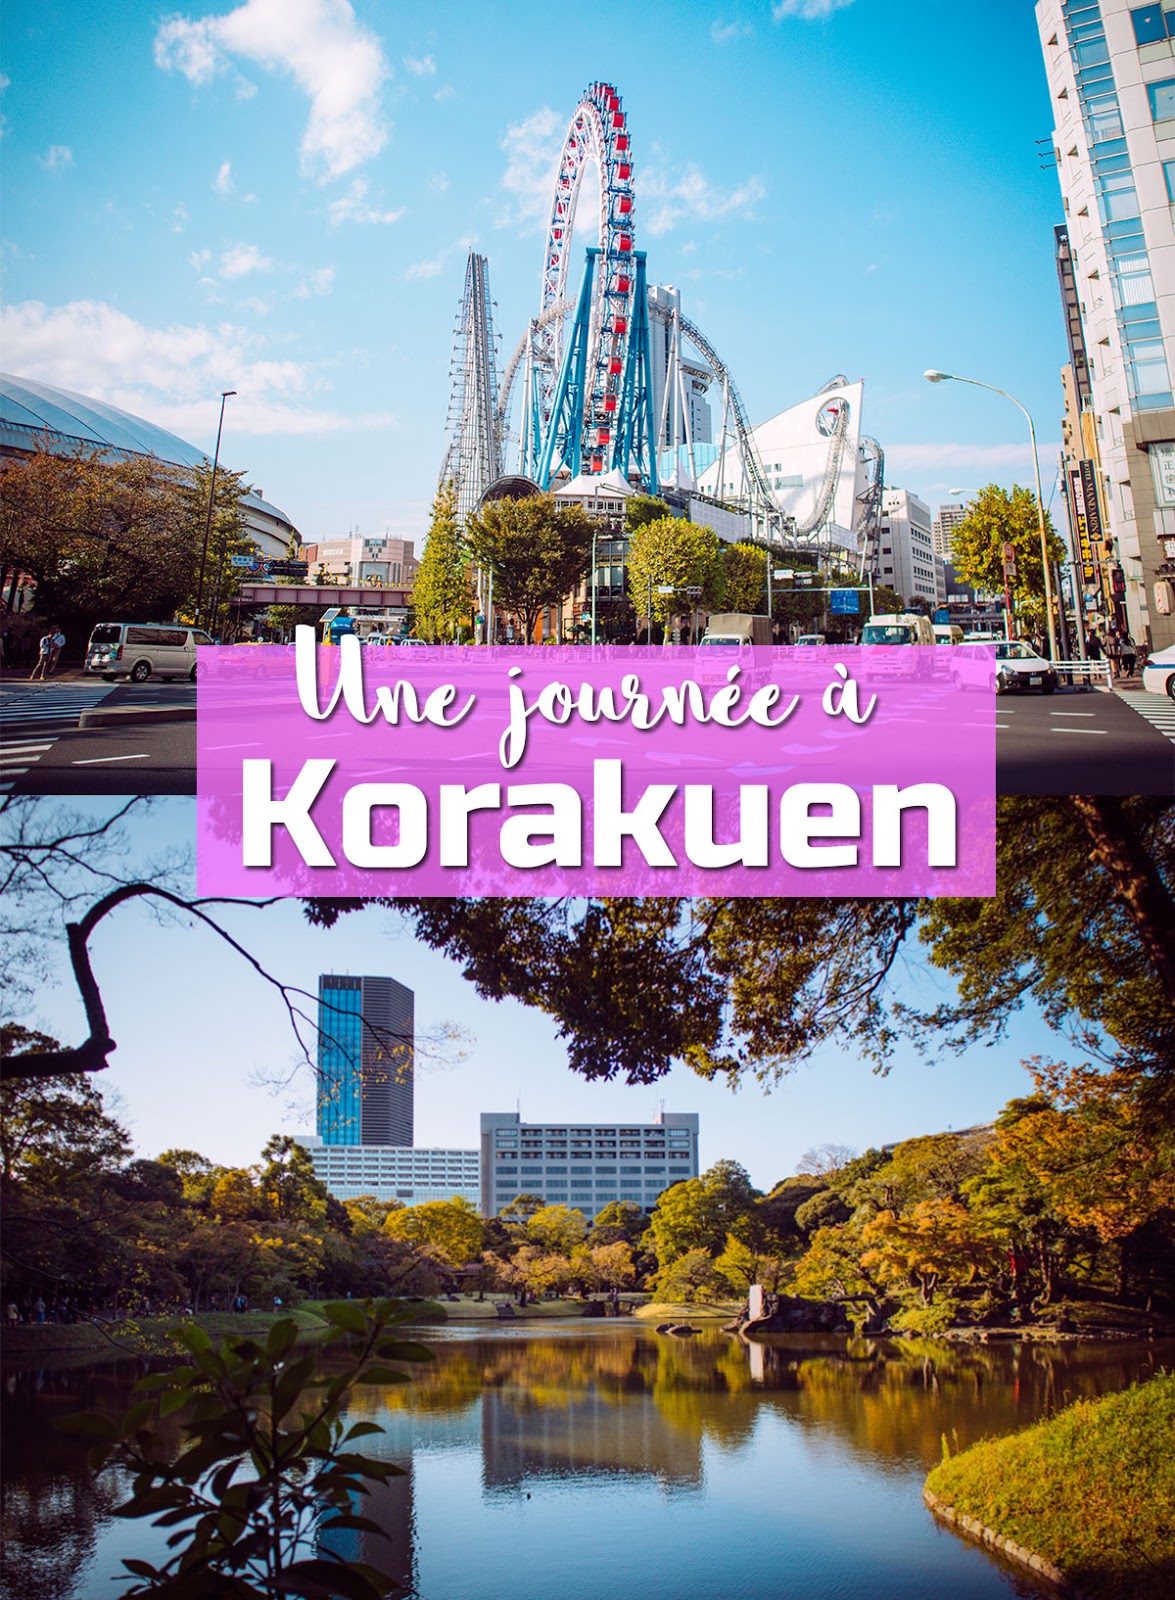 Tokyo Dome City et le jardin Korakuen : programme d'une belle journée dans le nord de Tokyo